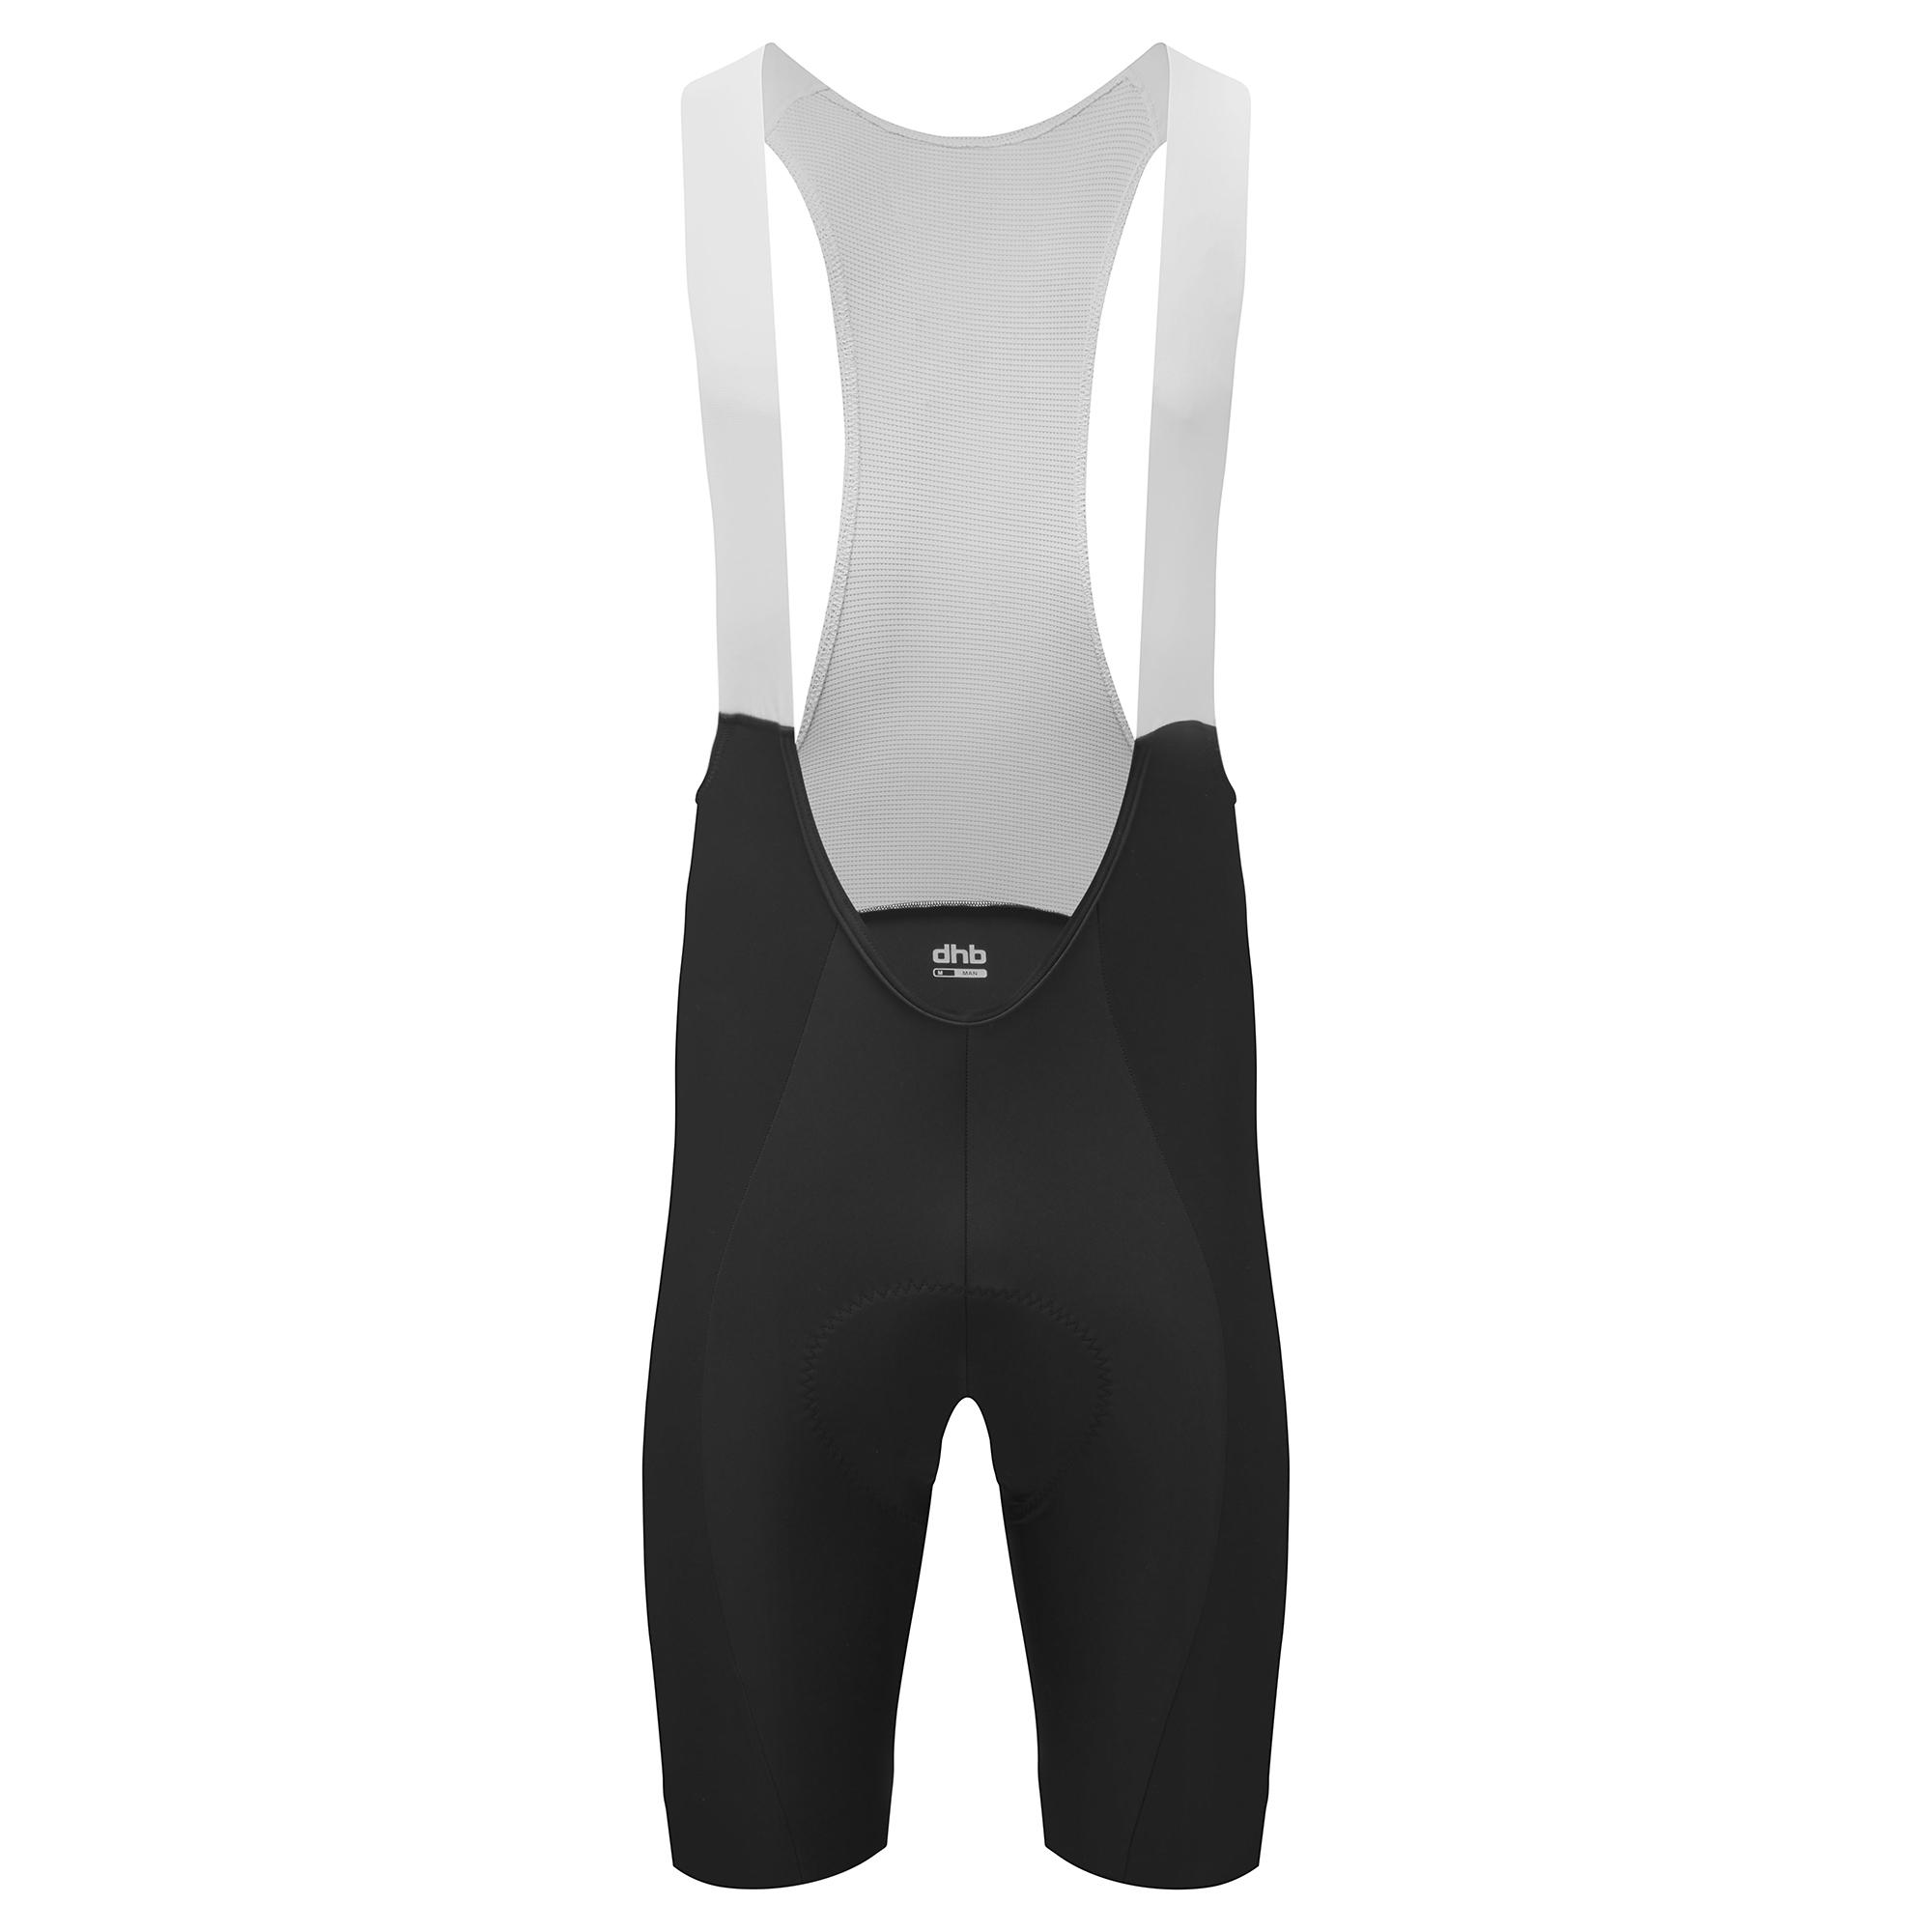 Dhb Aeron Bib Shorts 2.0 - Black/white